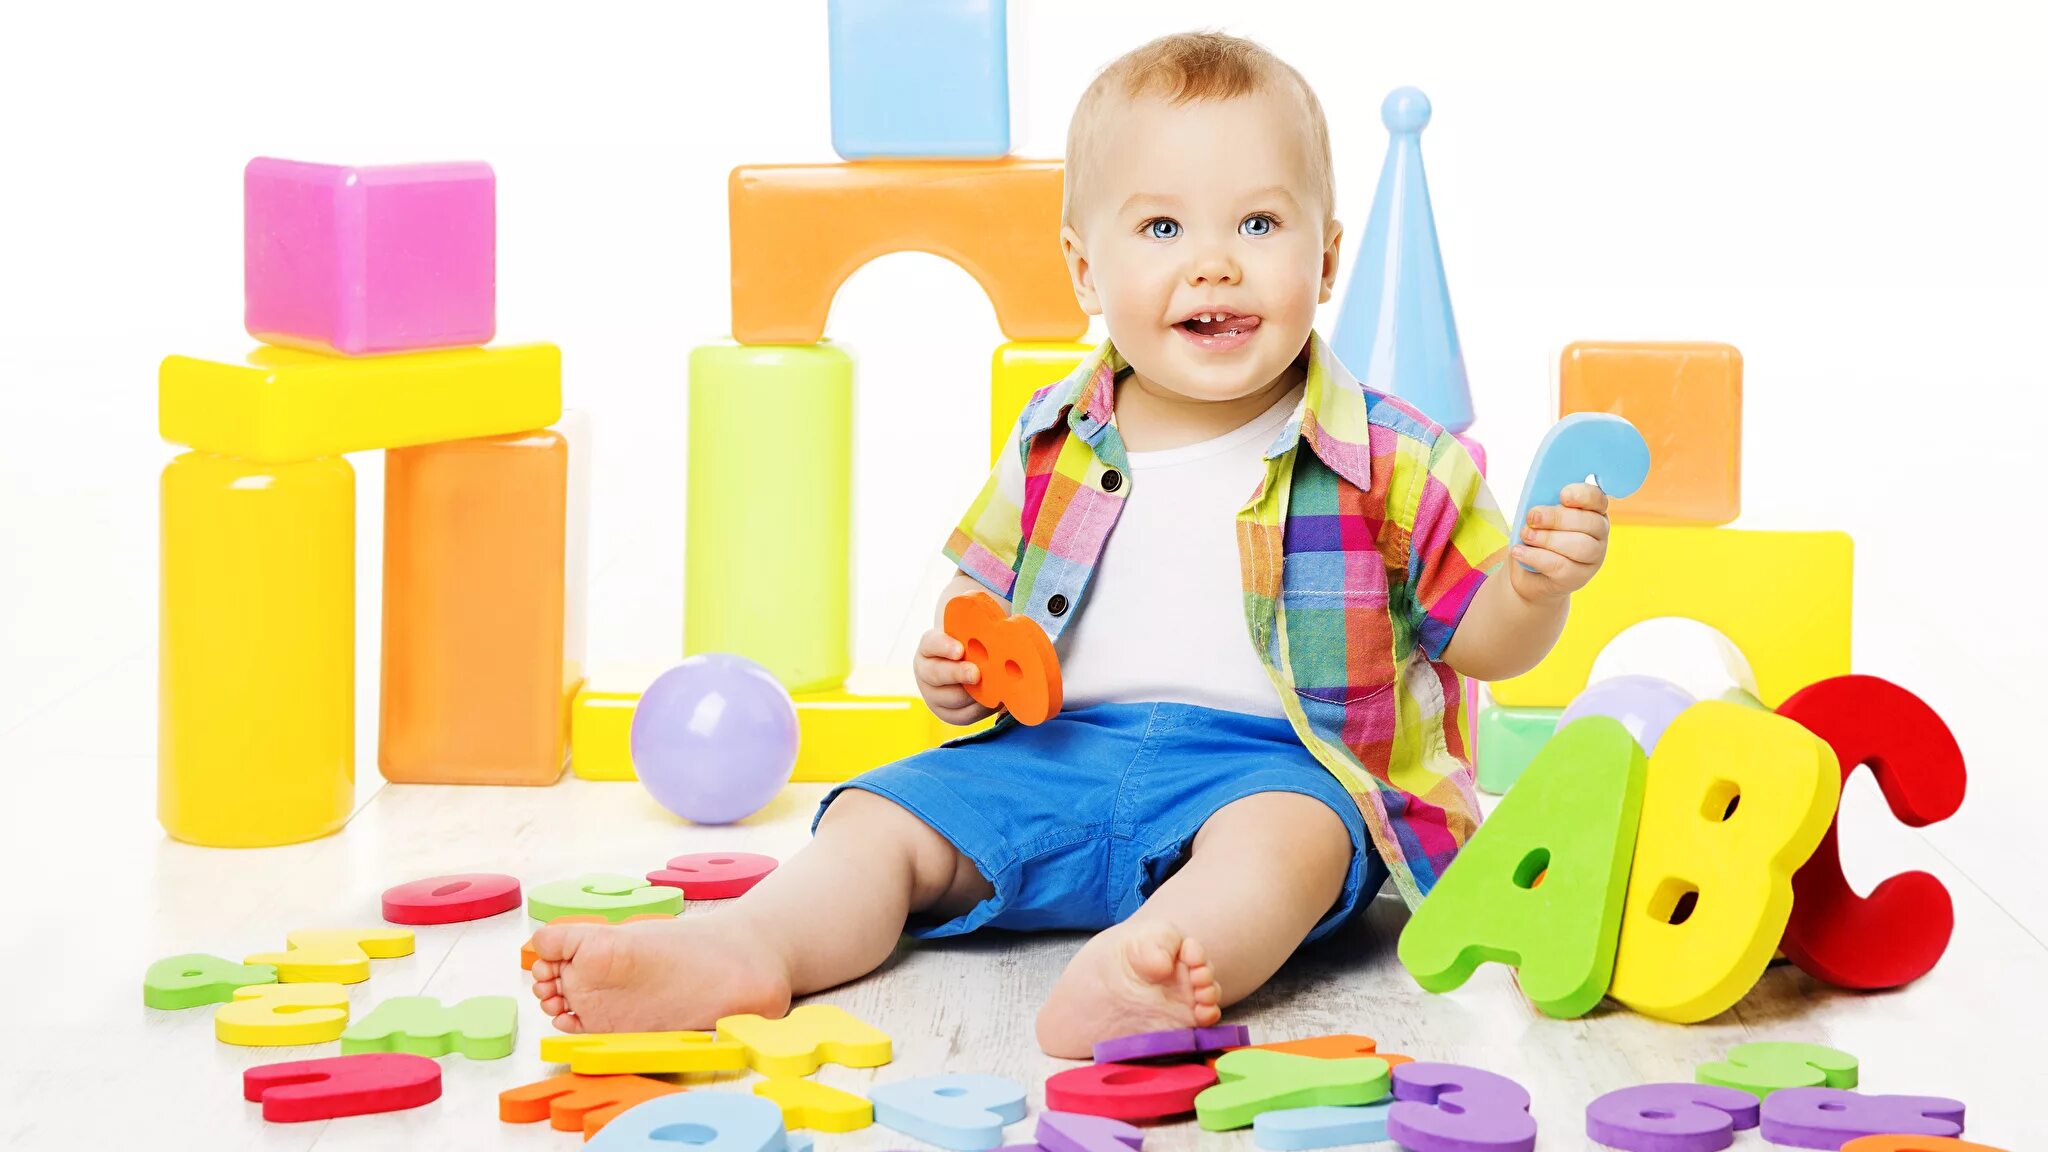 Игрушки для детей. Игрушки для детей раннего возраста. Разноцветные игрушки. Игрушки для детей 2 года. Развитие детей 3 х лет